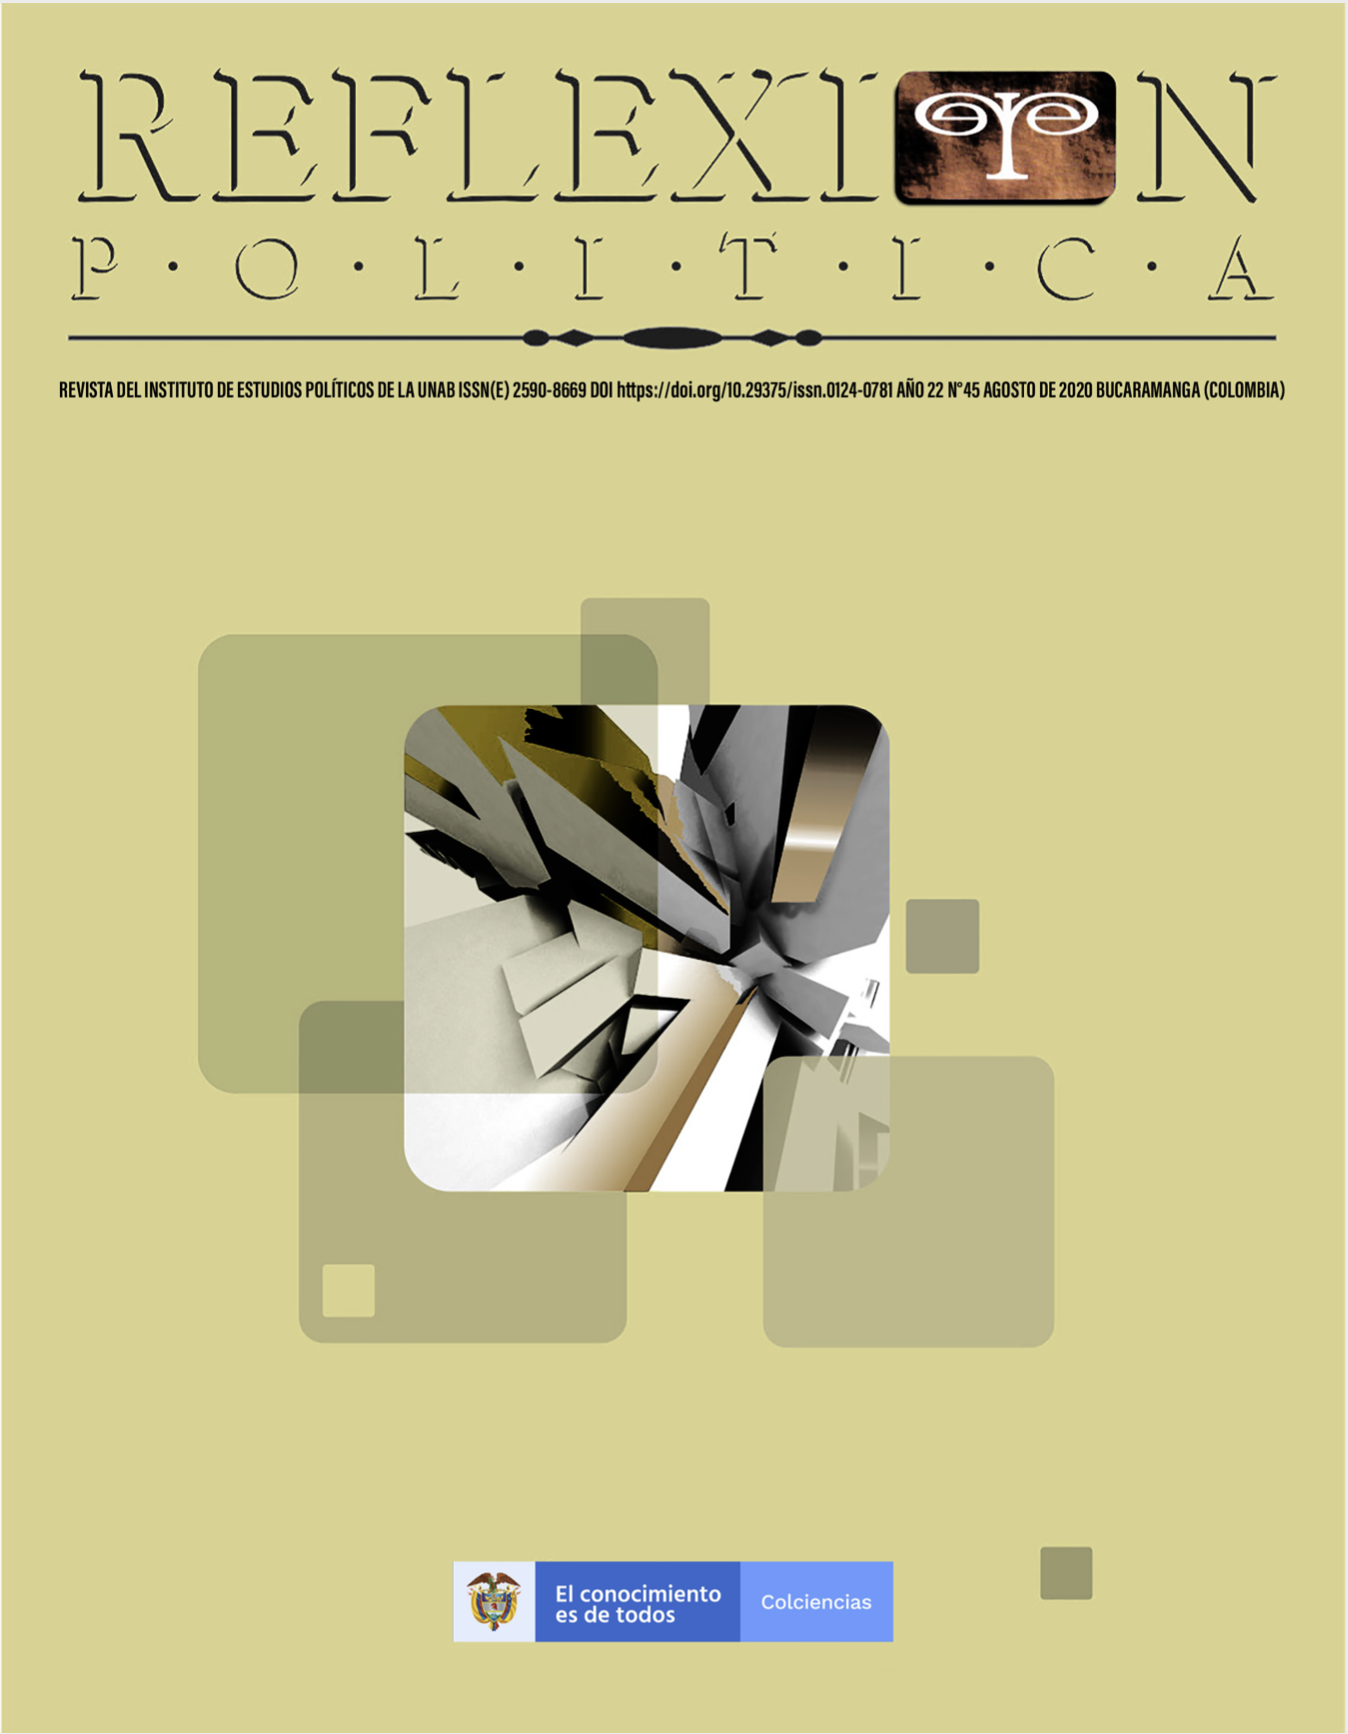 					Ver Vol. 22 Núm. 45 (22): Dossier: Procesos políticos en América Latina. Cuatro años de democracias convulsas (mayo a agosto)
				